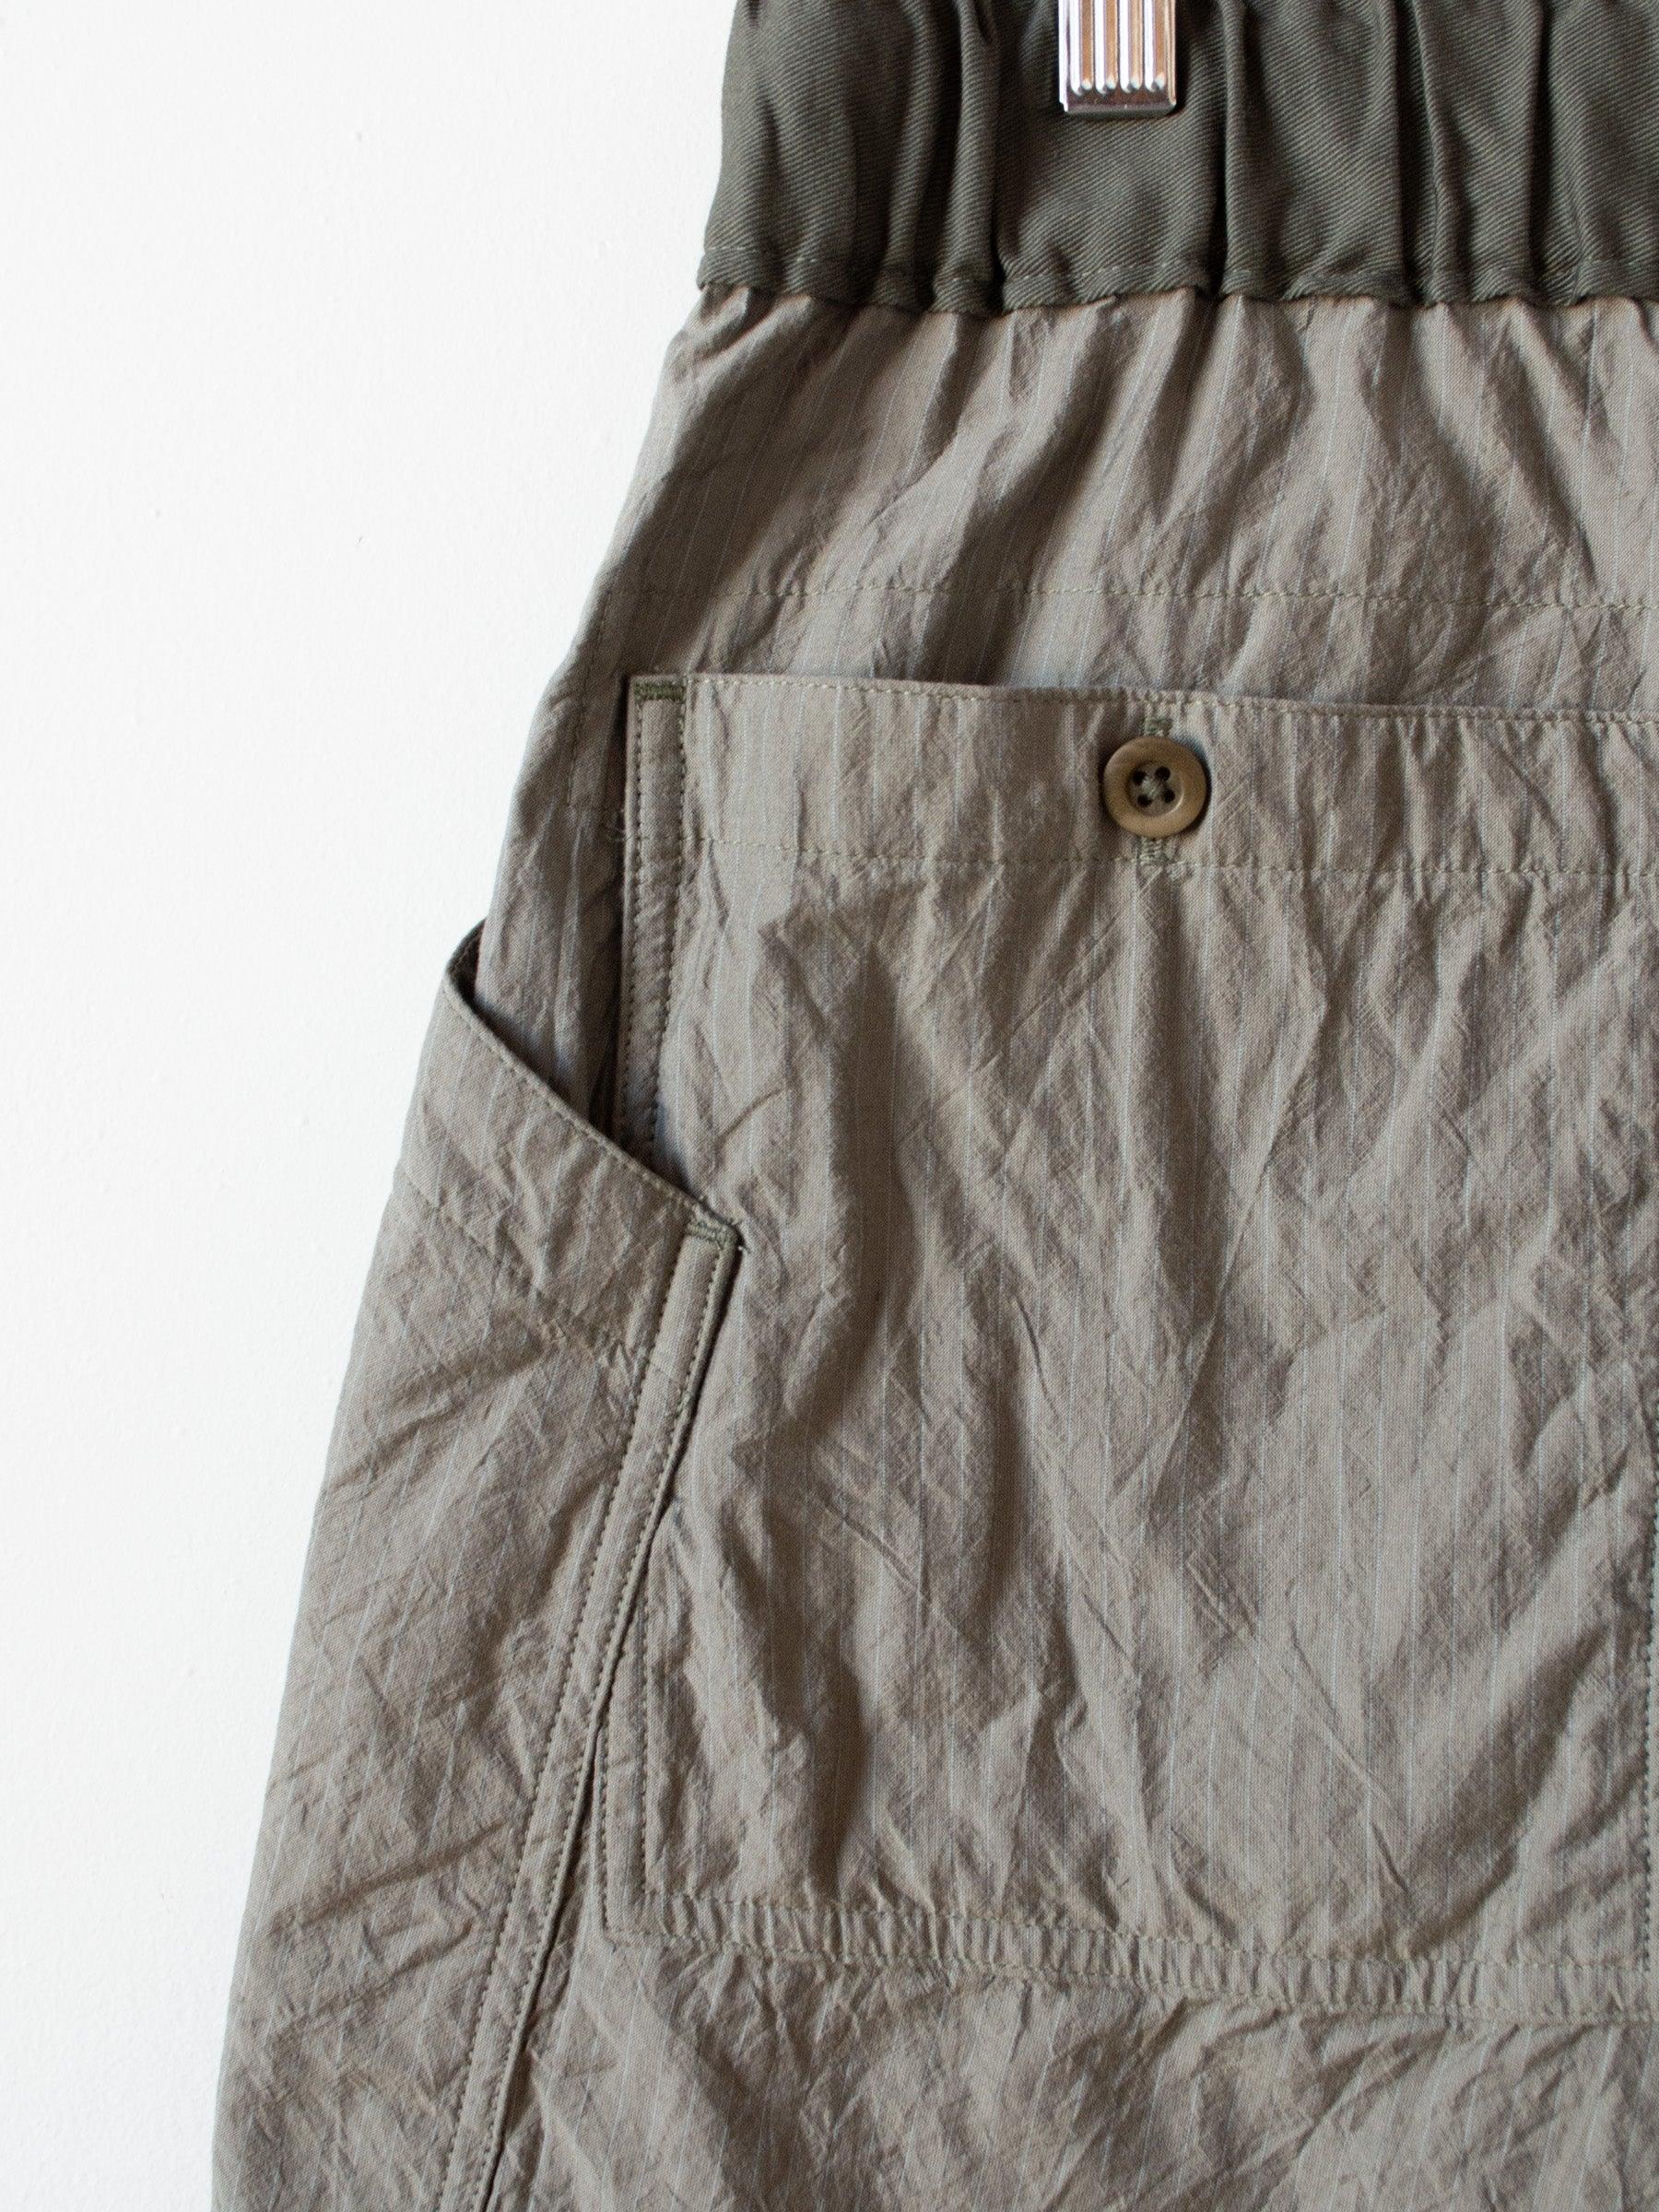 Namu Shop - ts(s) Pin Stripe Cotton Silk Loose Fit Shorts - Khaki